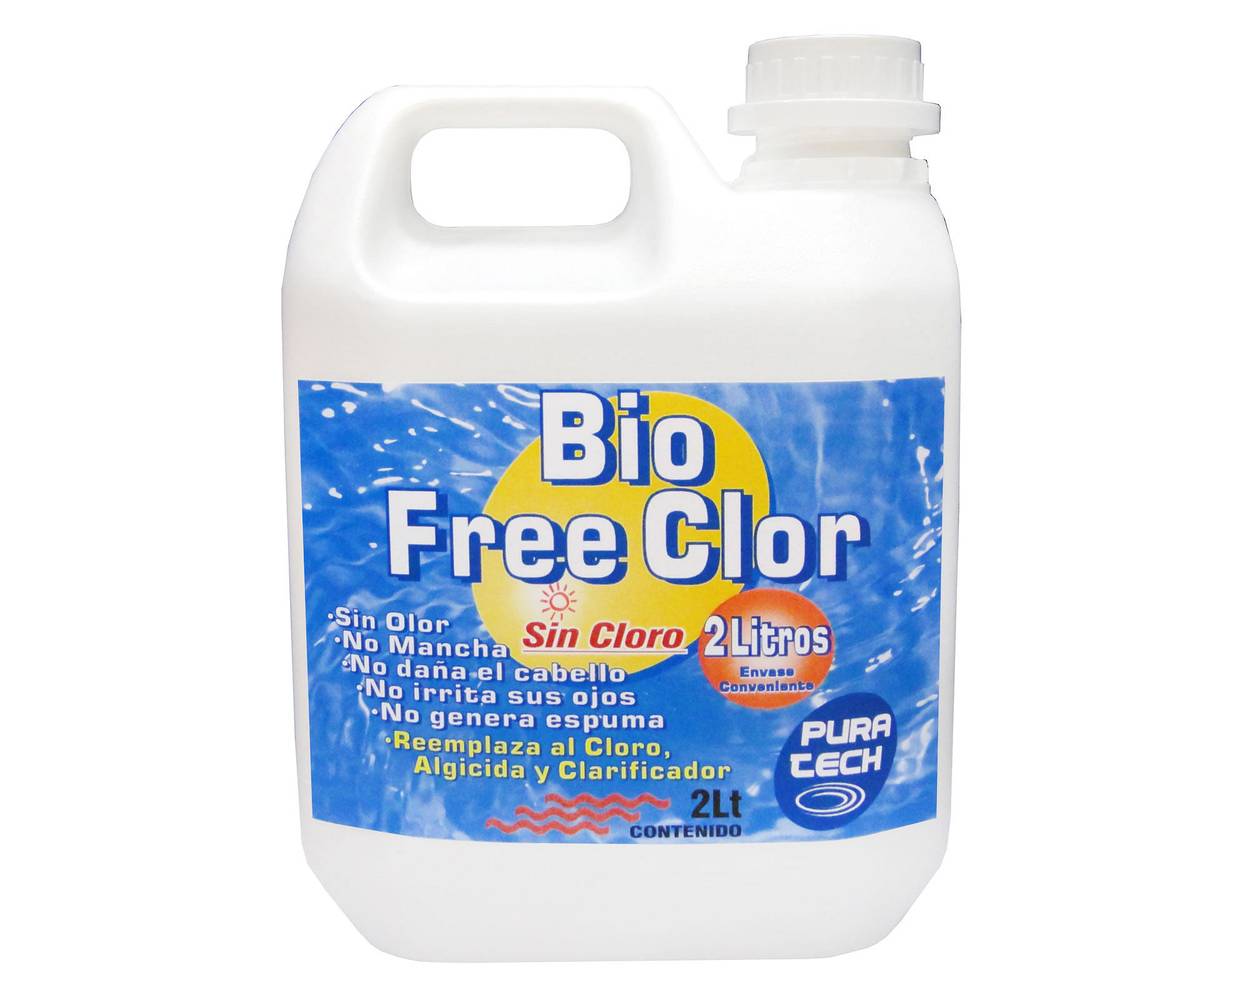 Puratech bio free clor piscinas 2 litros pura tech (2 l)